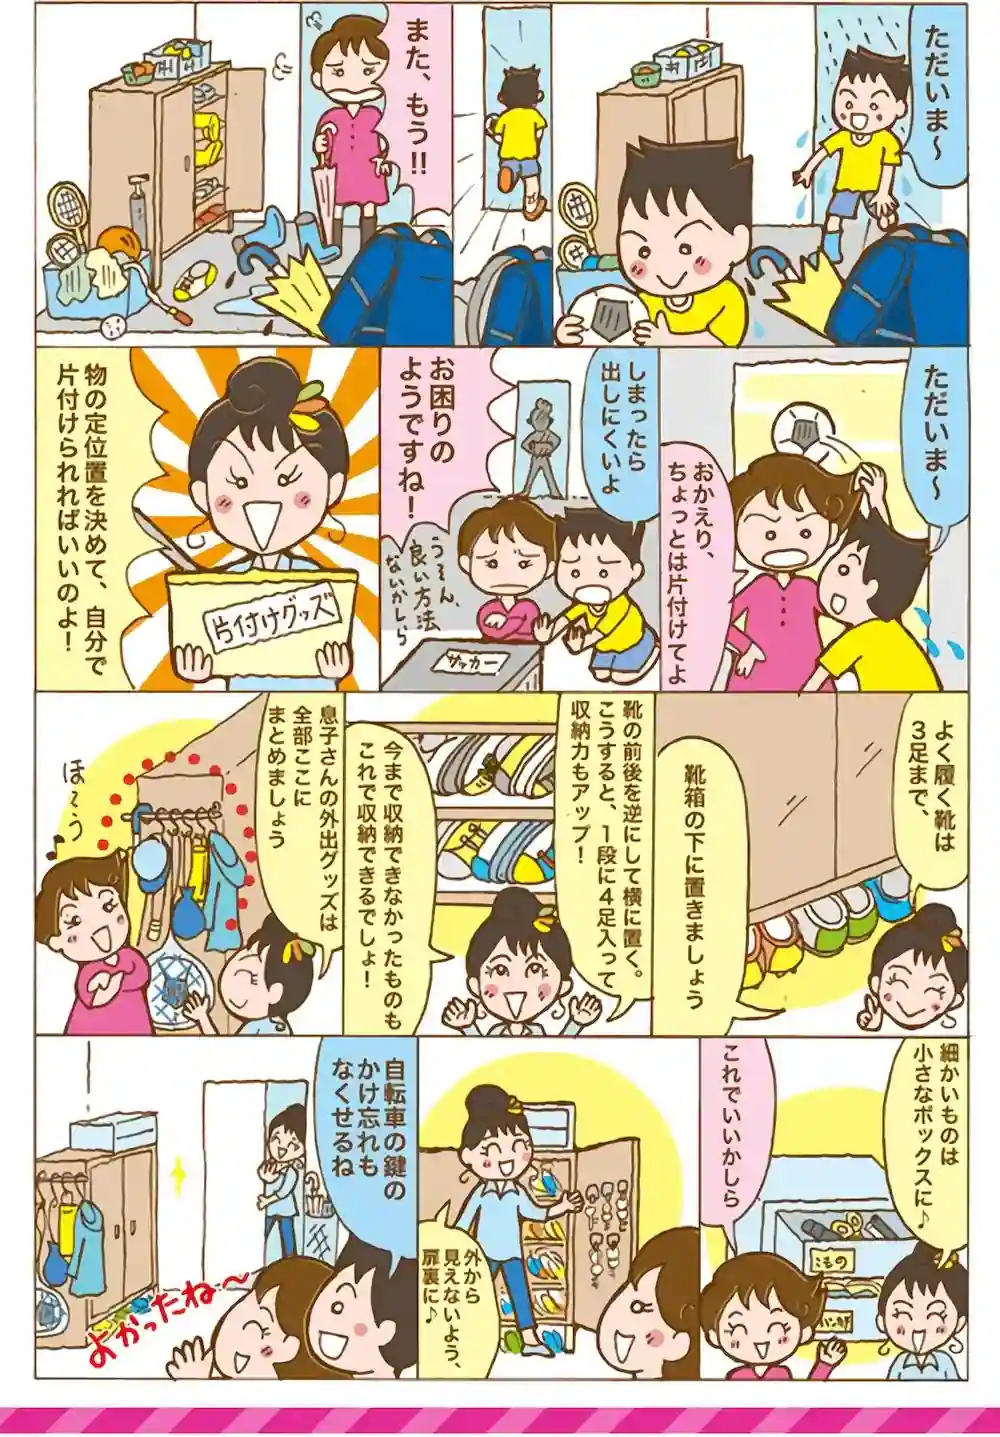 漫画第2話玄関いっぱいの子どもグッズをすっきりお片づけする方法-1